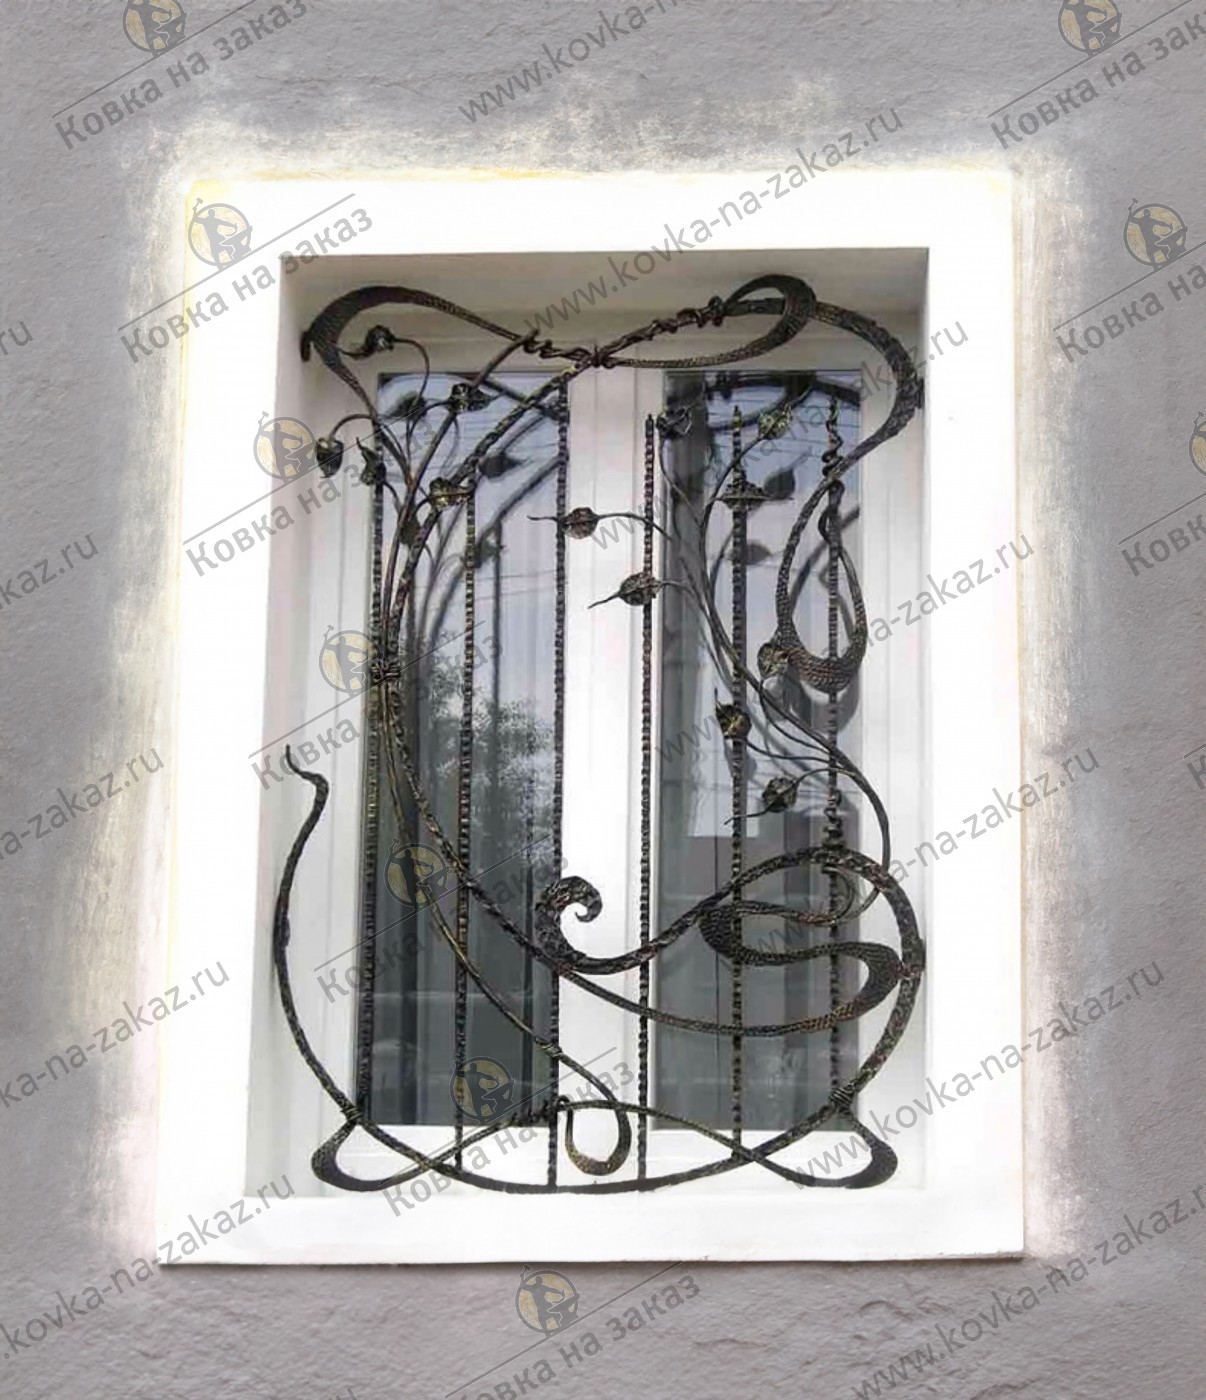 Фигурная кованая решетка в&nbsp;окно ручной работы из&nbsp;полосы с&nbsp;декоративной чеканкой и&nbsp;коваными листьями, фото 1